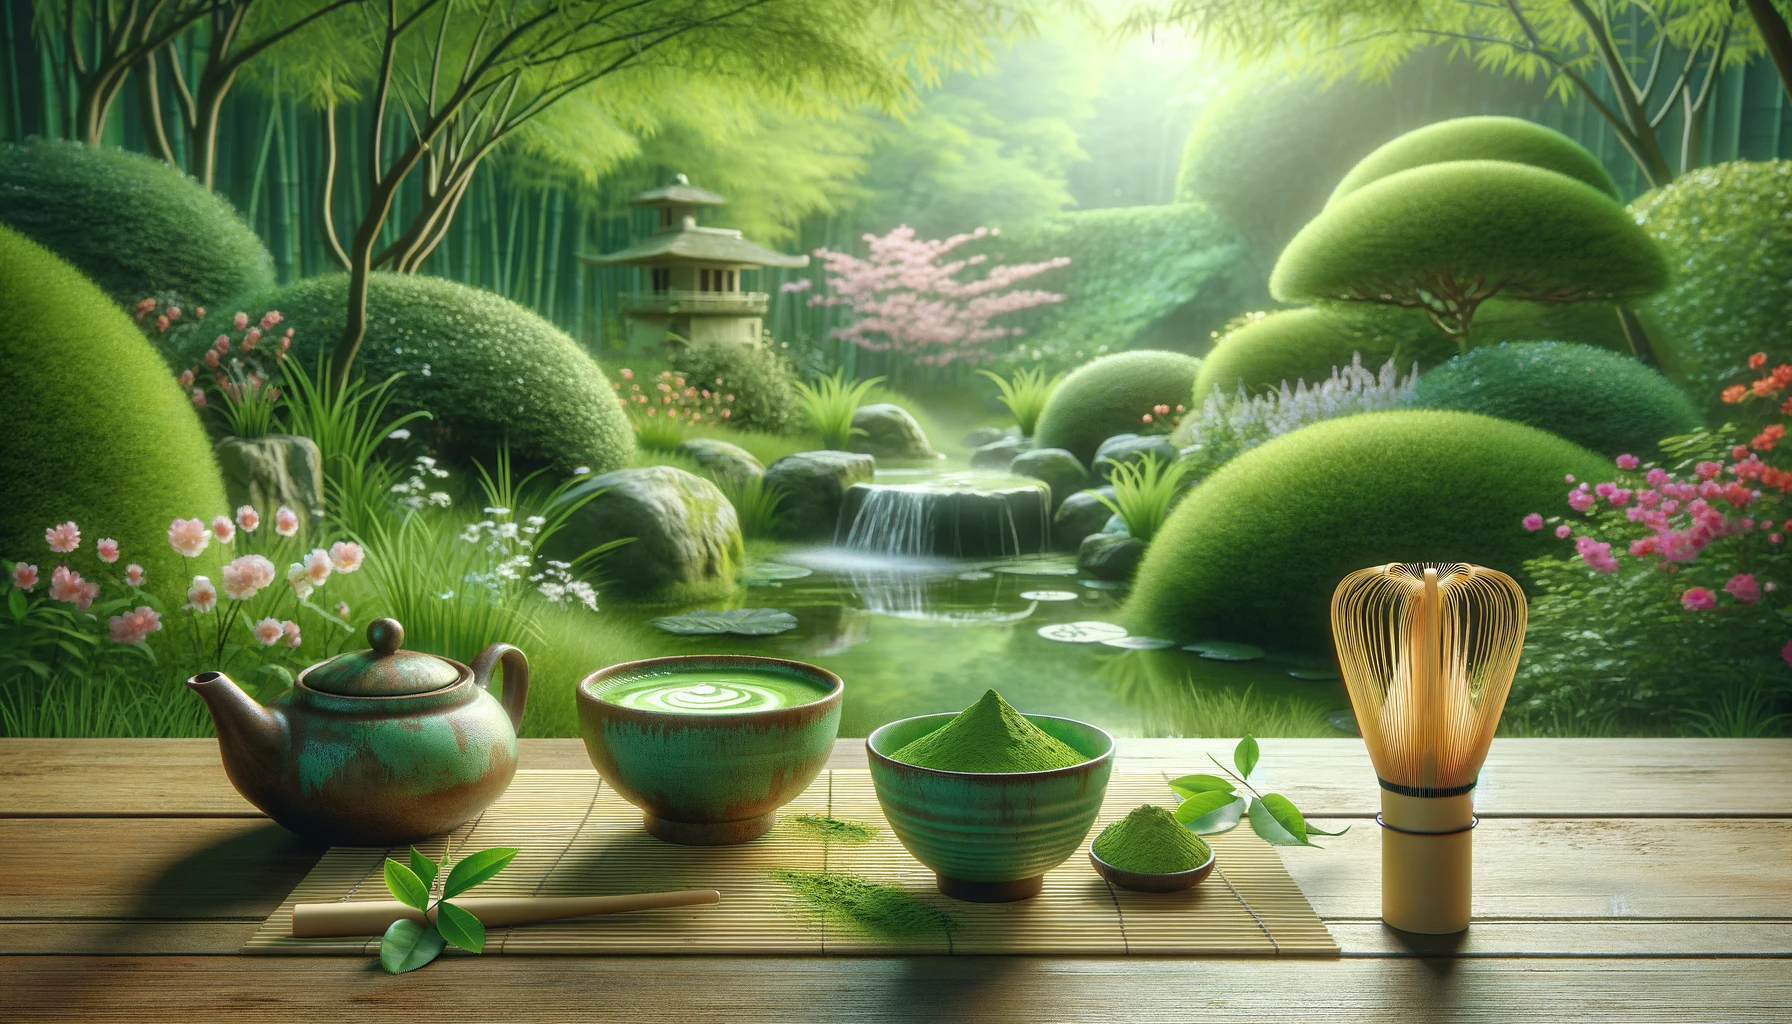 Un sereno entorno de jardín con un tradicional juego de té matcha sobre una estera de bambú, polvo de matcha de color verde brillante y un batidor. El jardín es exuberante y simboliza el crecimiento.